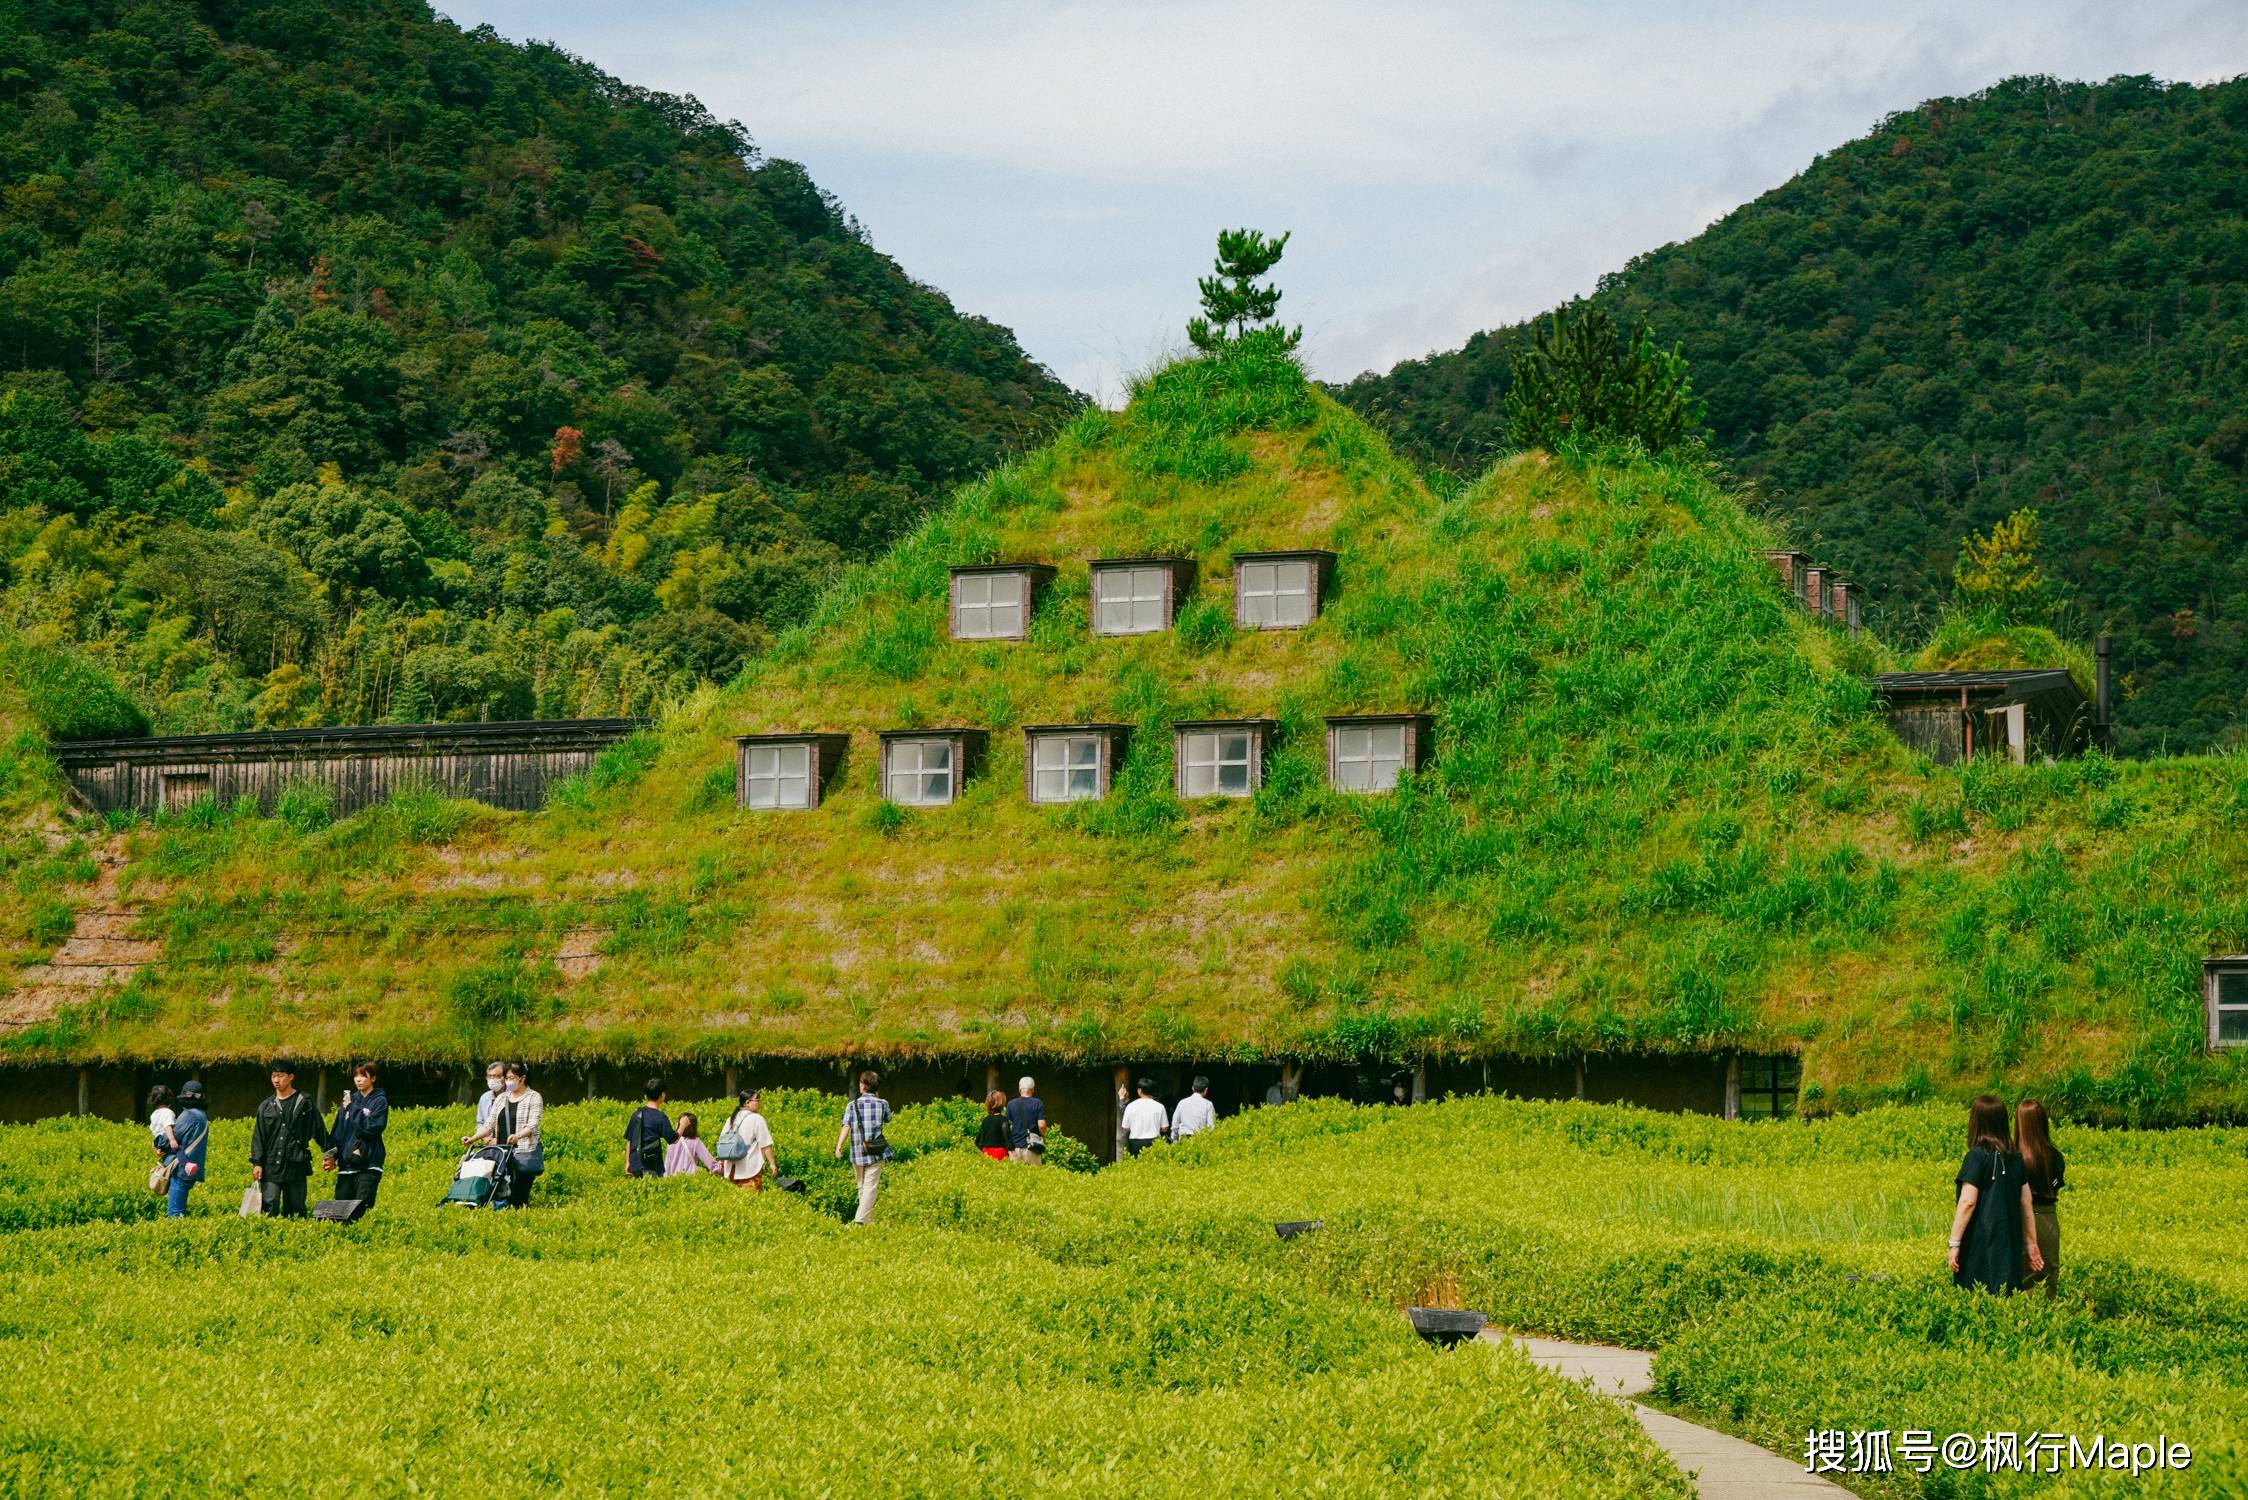   引起 探访日本山区的神秘之地:宫崎骏其人笔下的甜点天堂拉科利纳。 